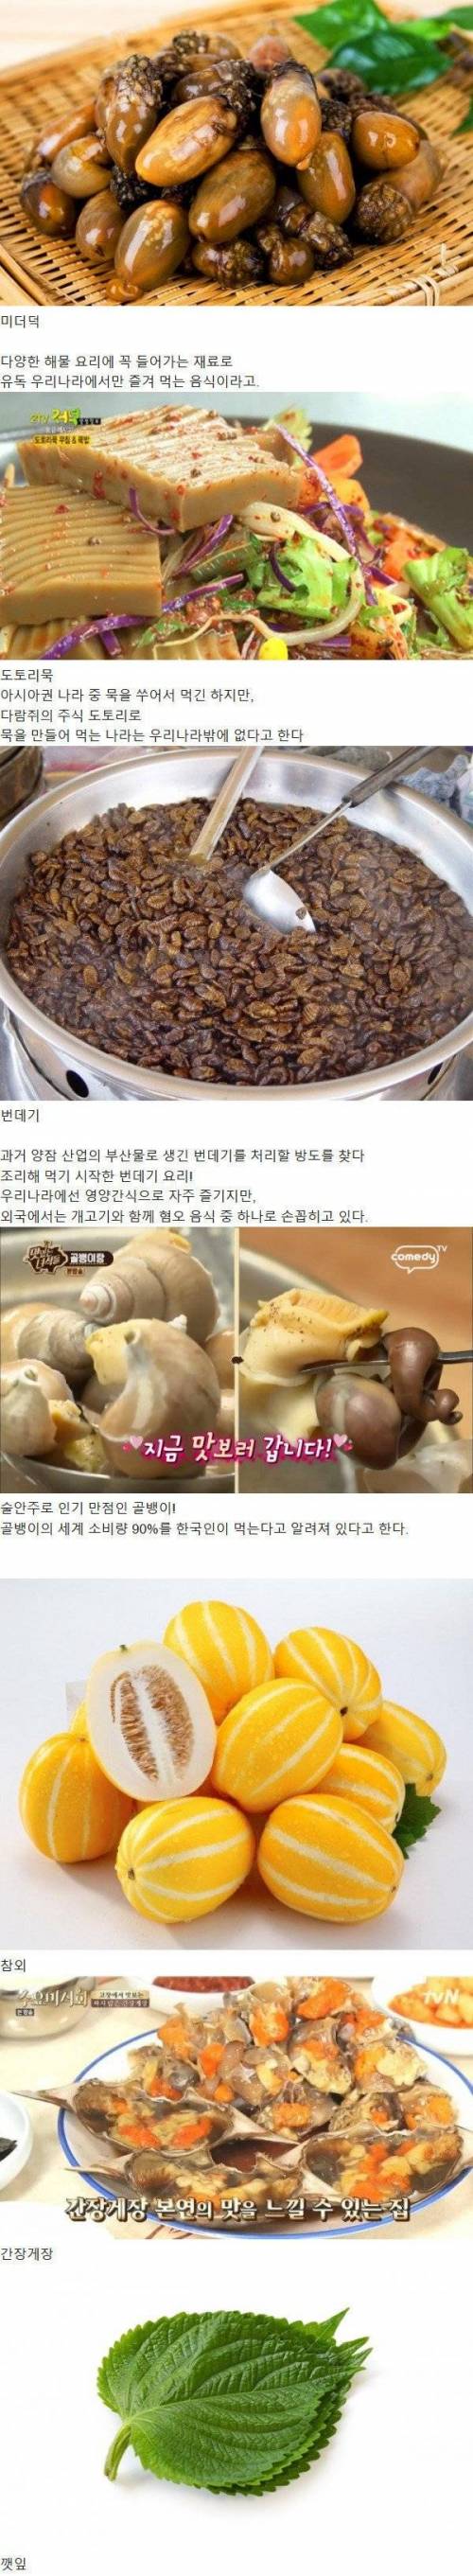 한국인들이 유독 좋아하는 음식.jpg